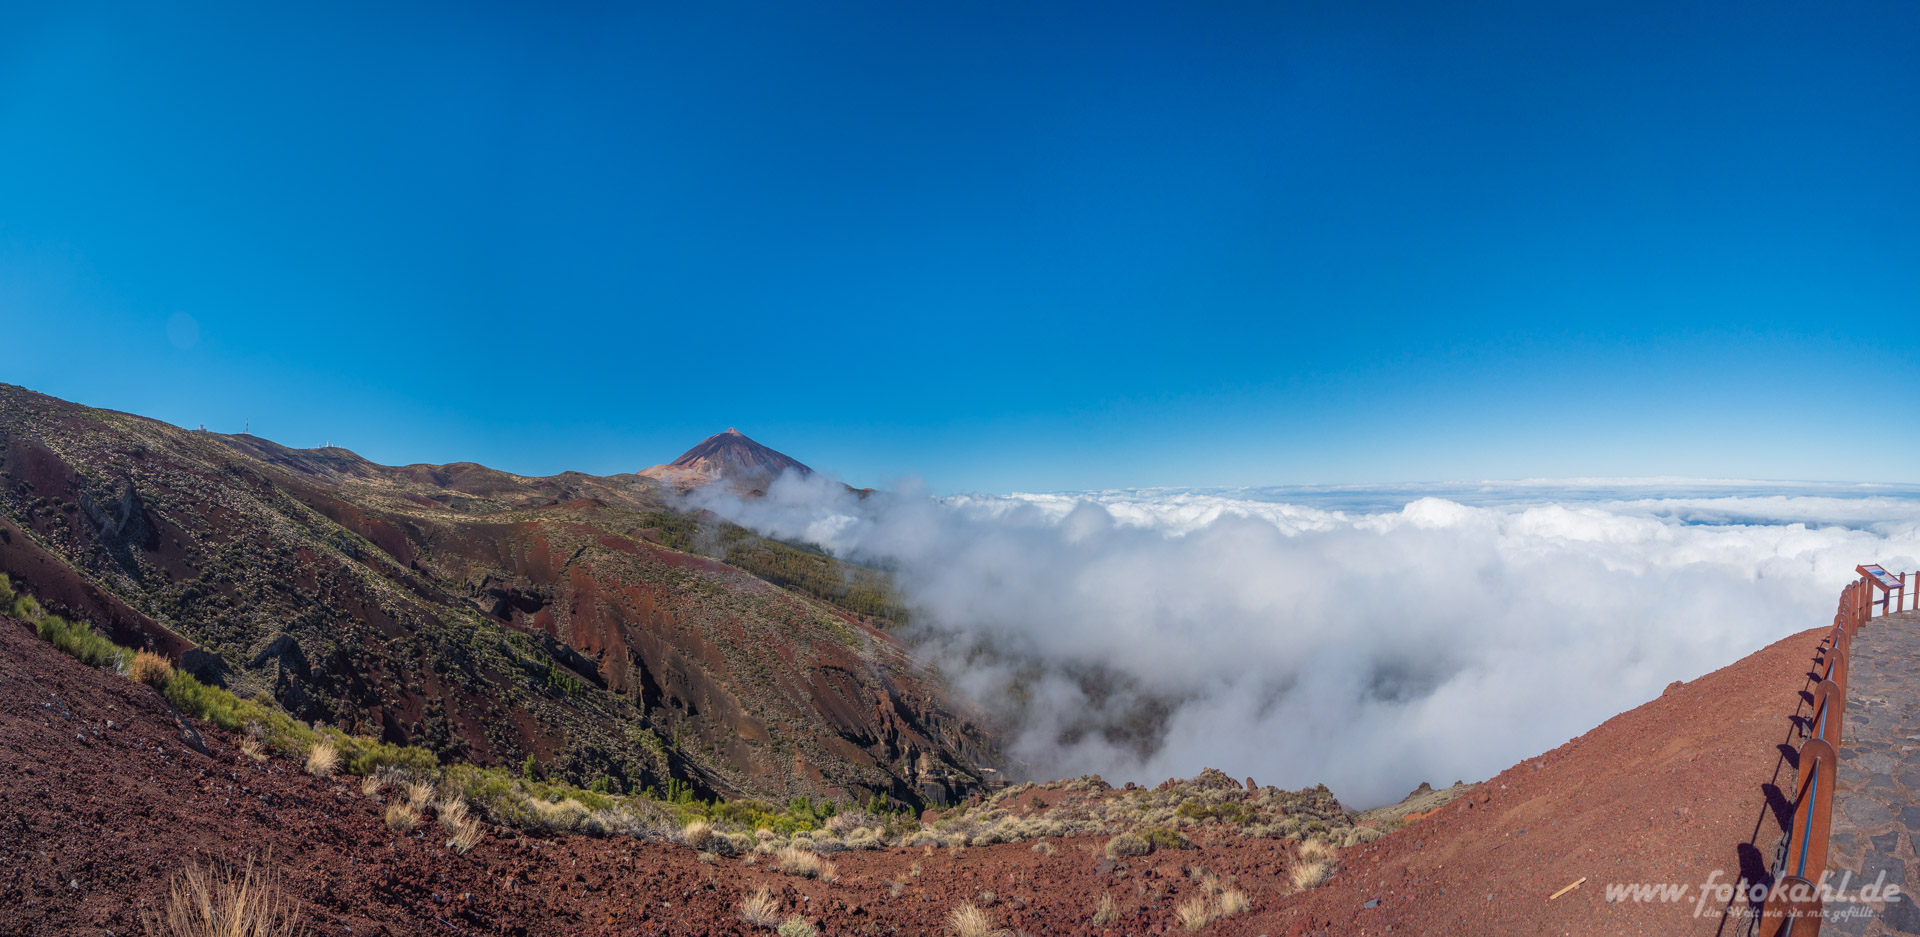 Teneriffa - Parque Nacional del Teide